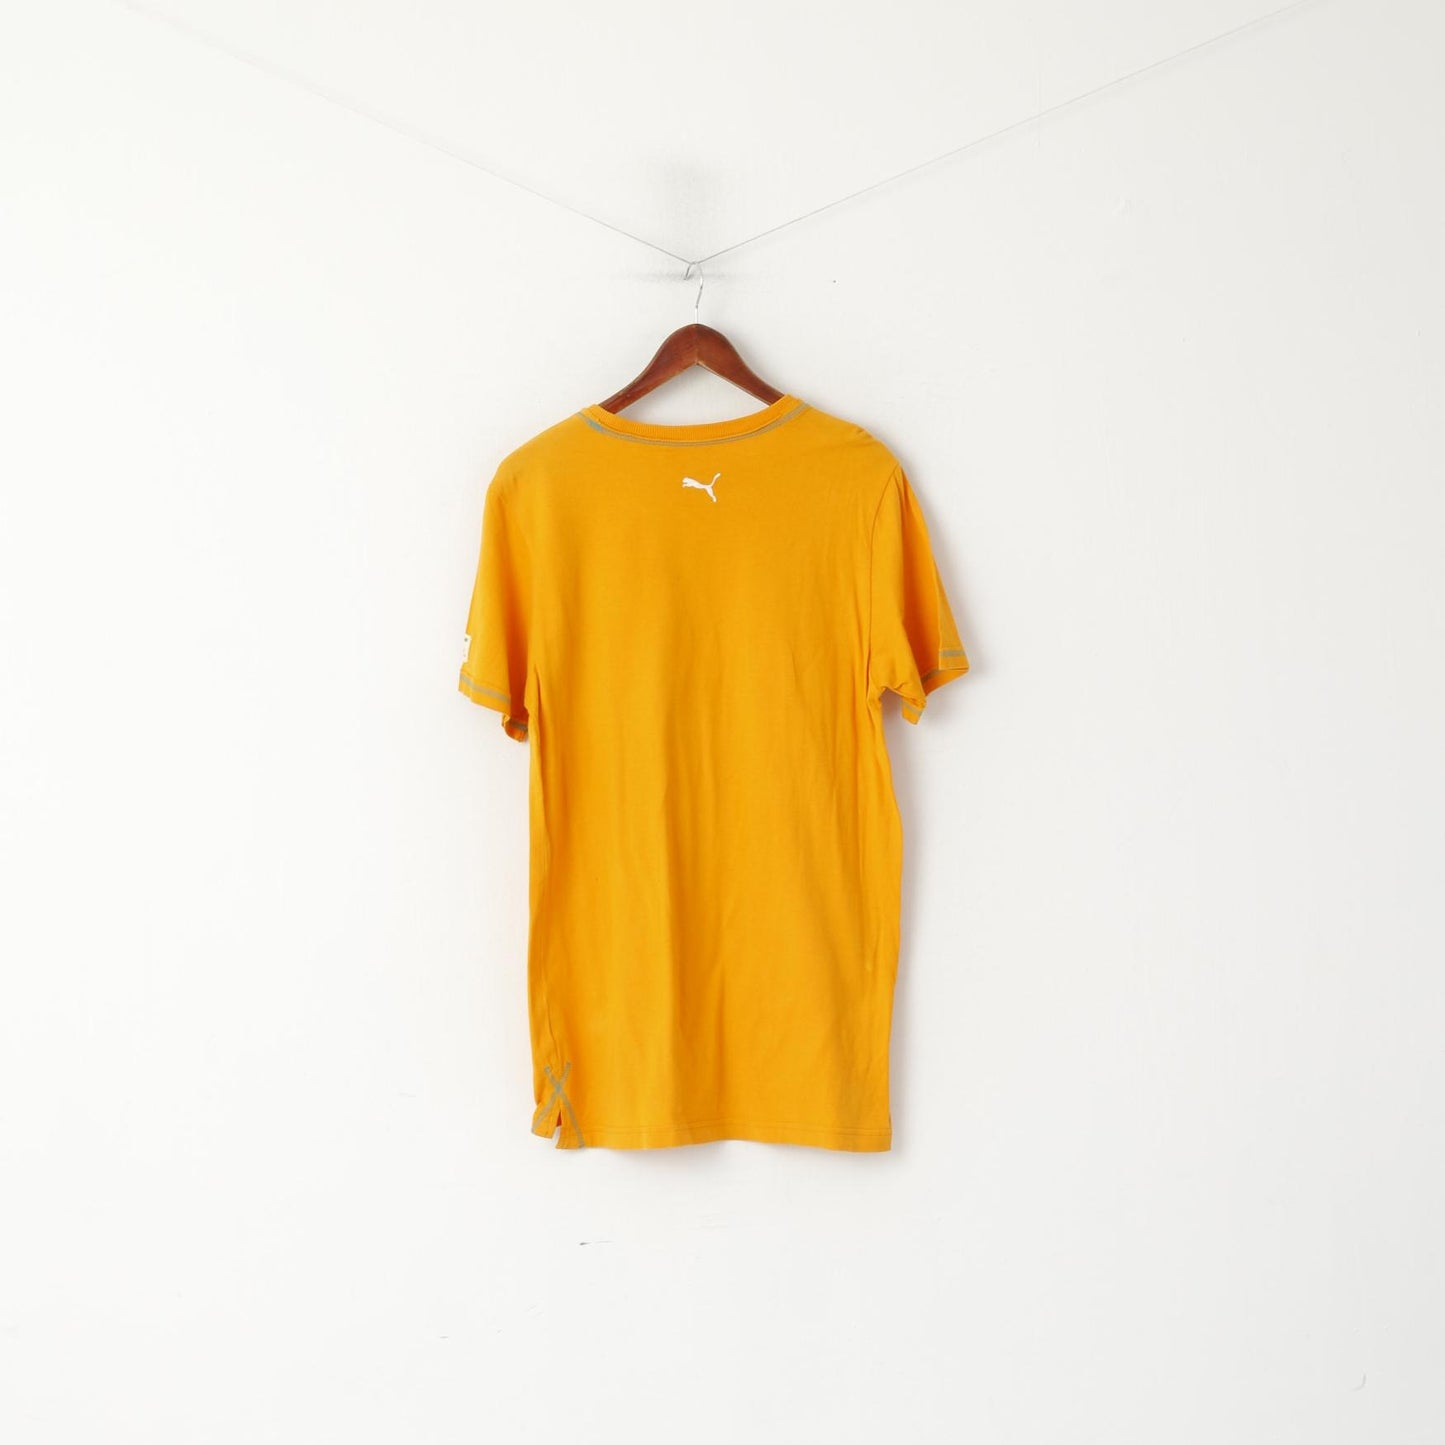 T-shirt Puma da uomo M grafica in cotone arancione Puma Fresh Since 1948 Rugby Top a maniche corte